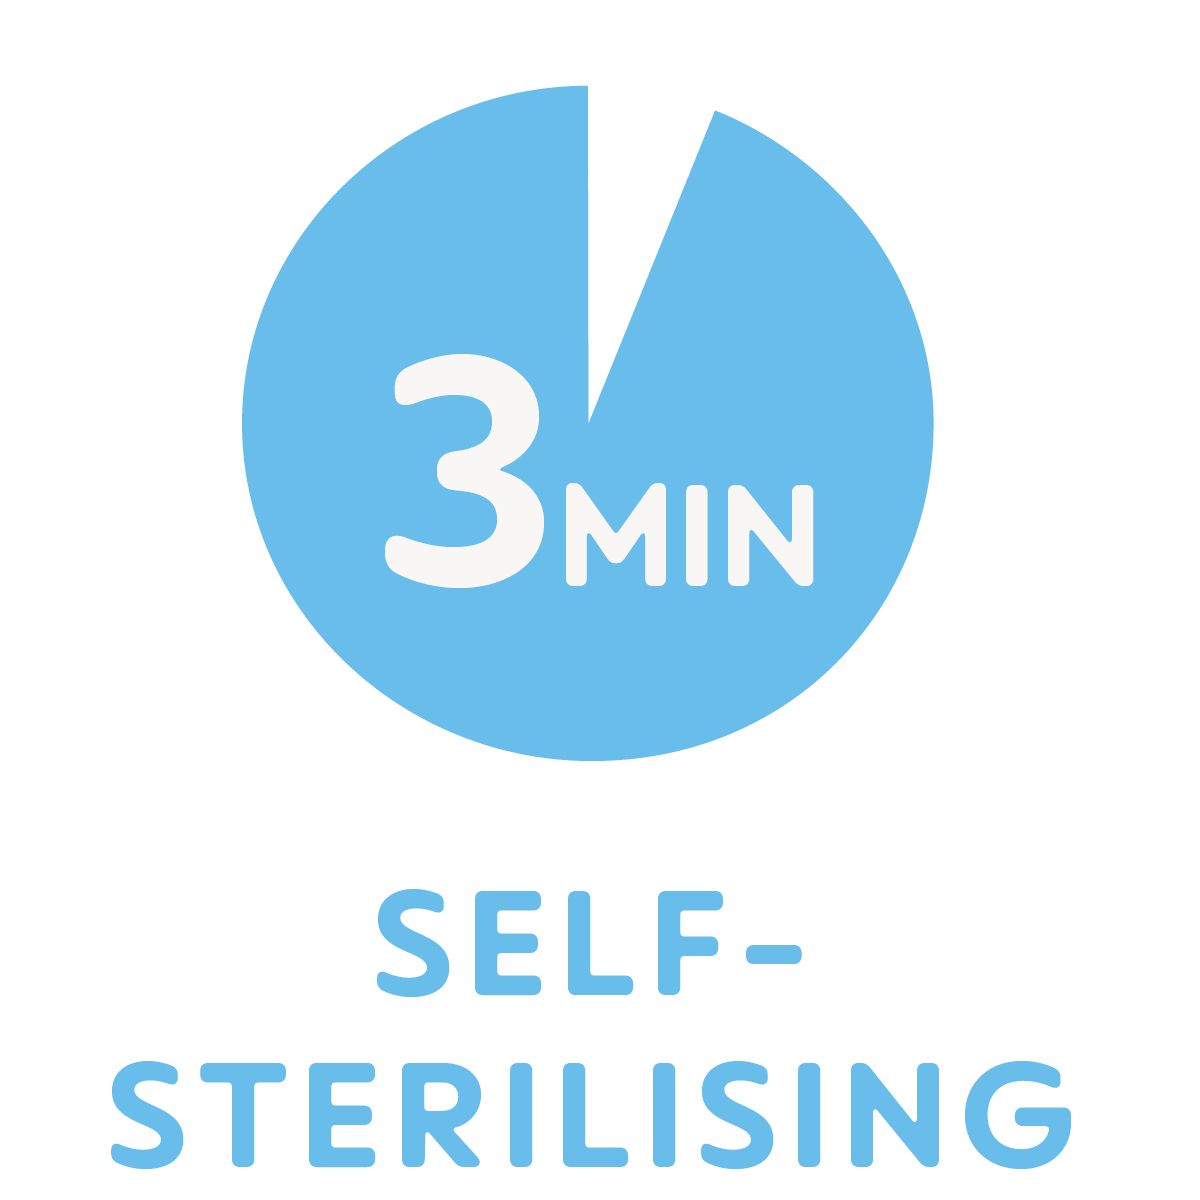 Fonction unique d’auto-stérilisation : stérilisation au micro-ondes simple et ultra rapide